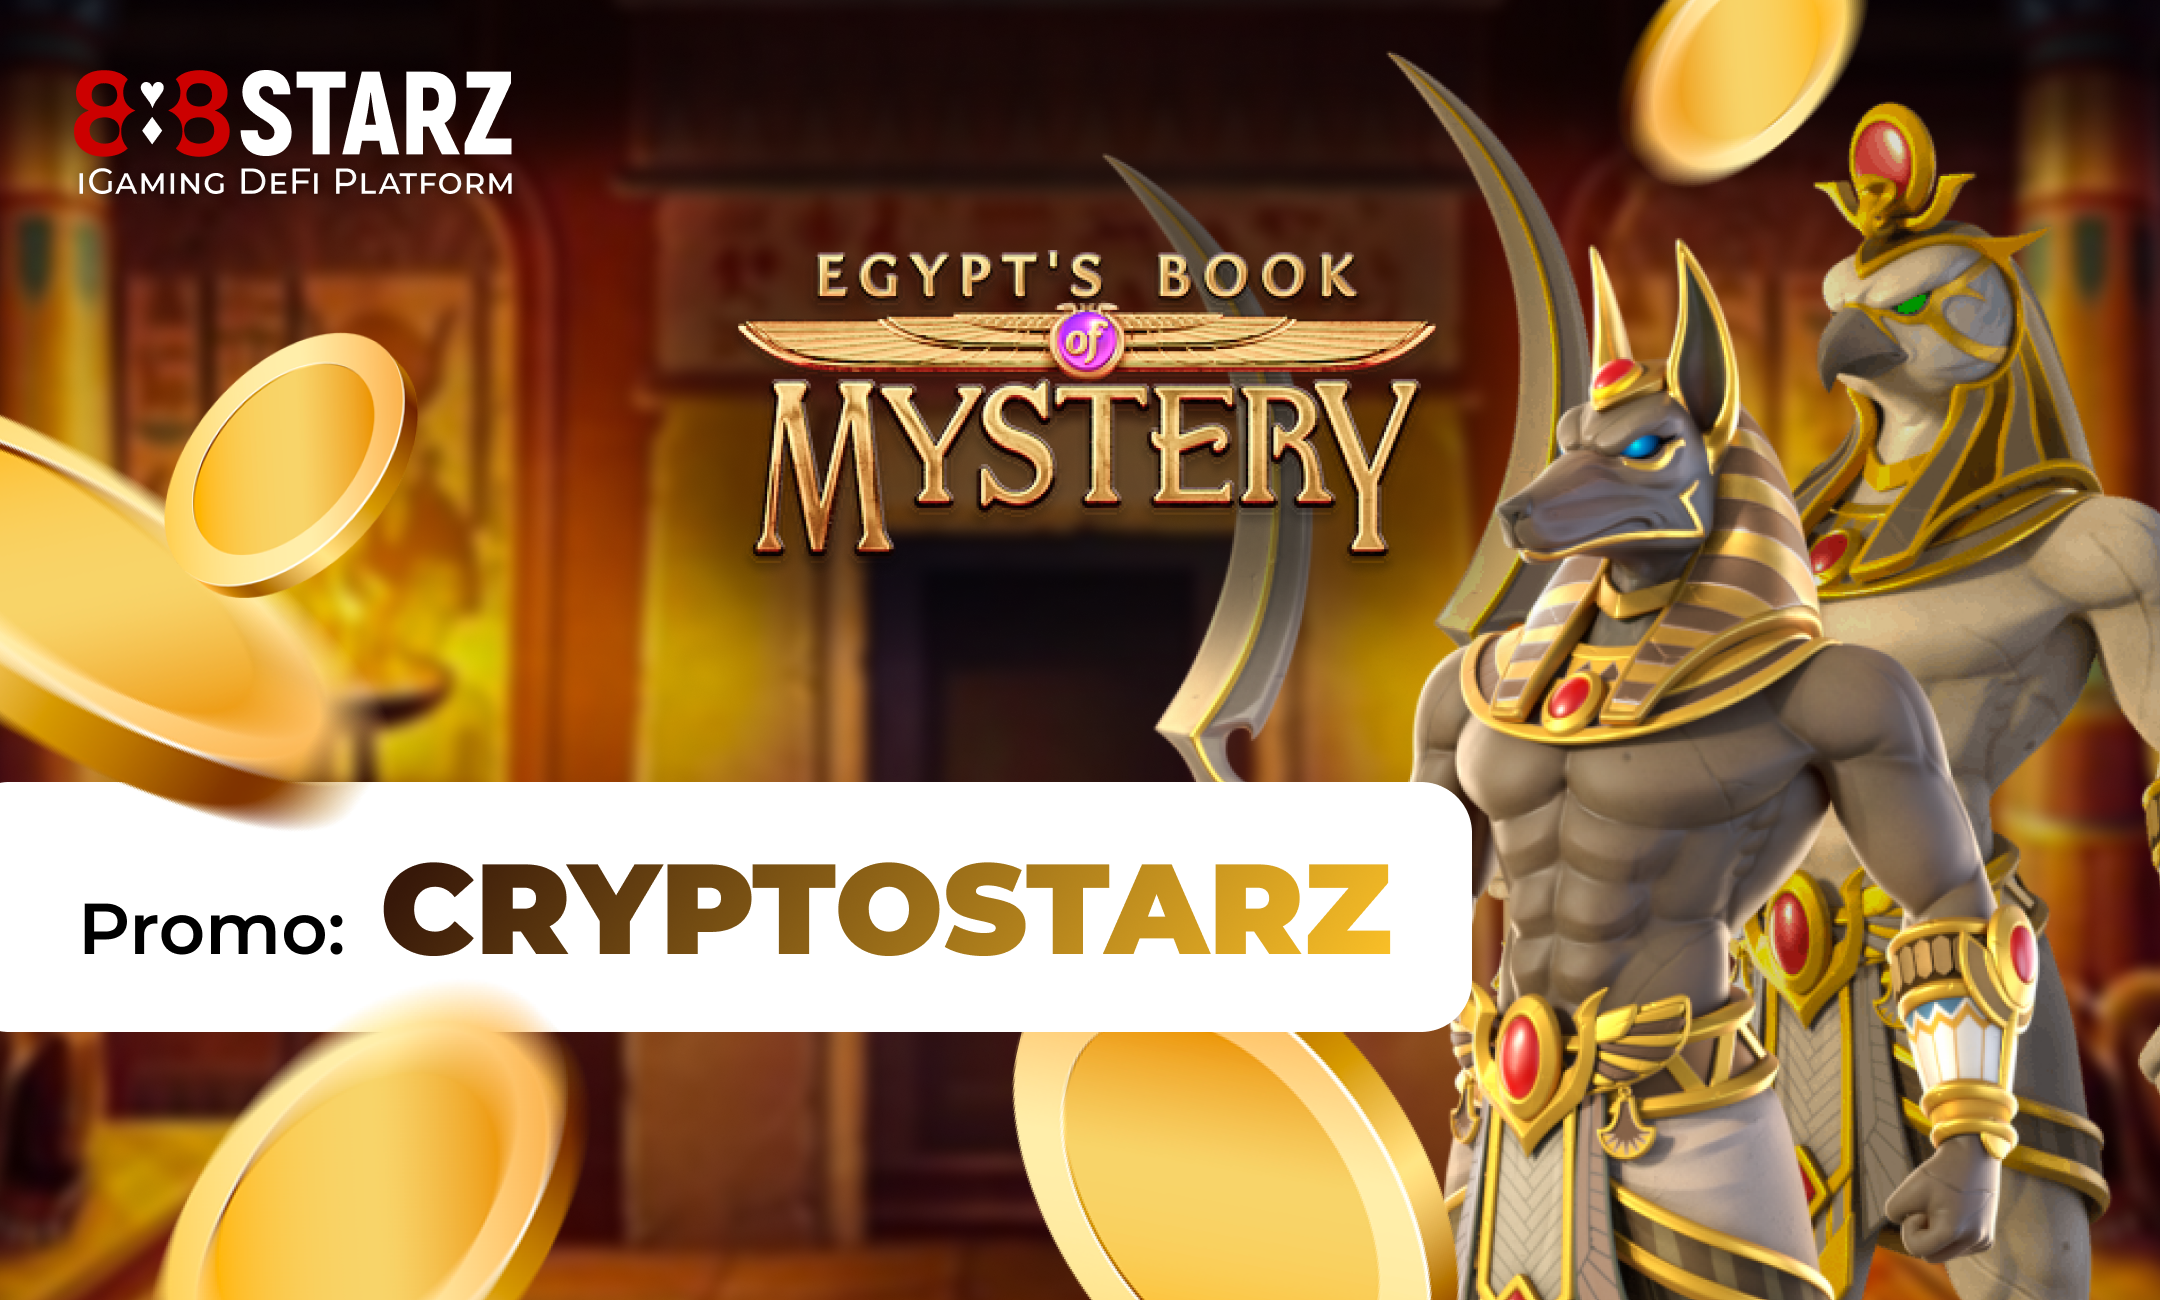 Слоты Egypt book of Mystery. Сокровища фараона настольная игра. Isoland дверь гробницы. 888starz сайт myandroid apk com